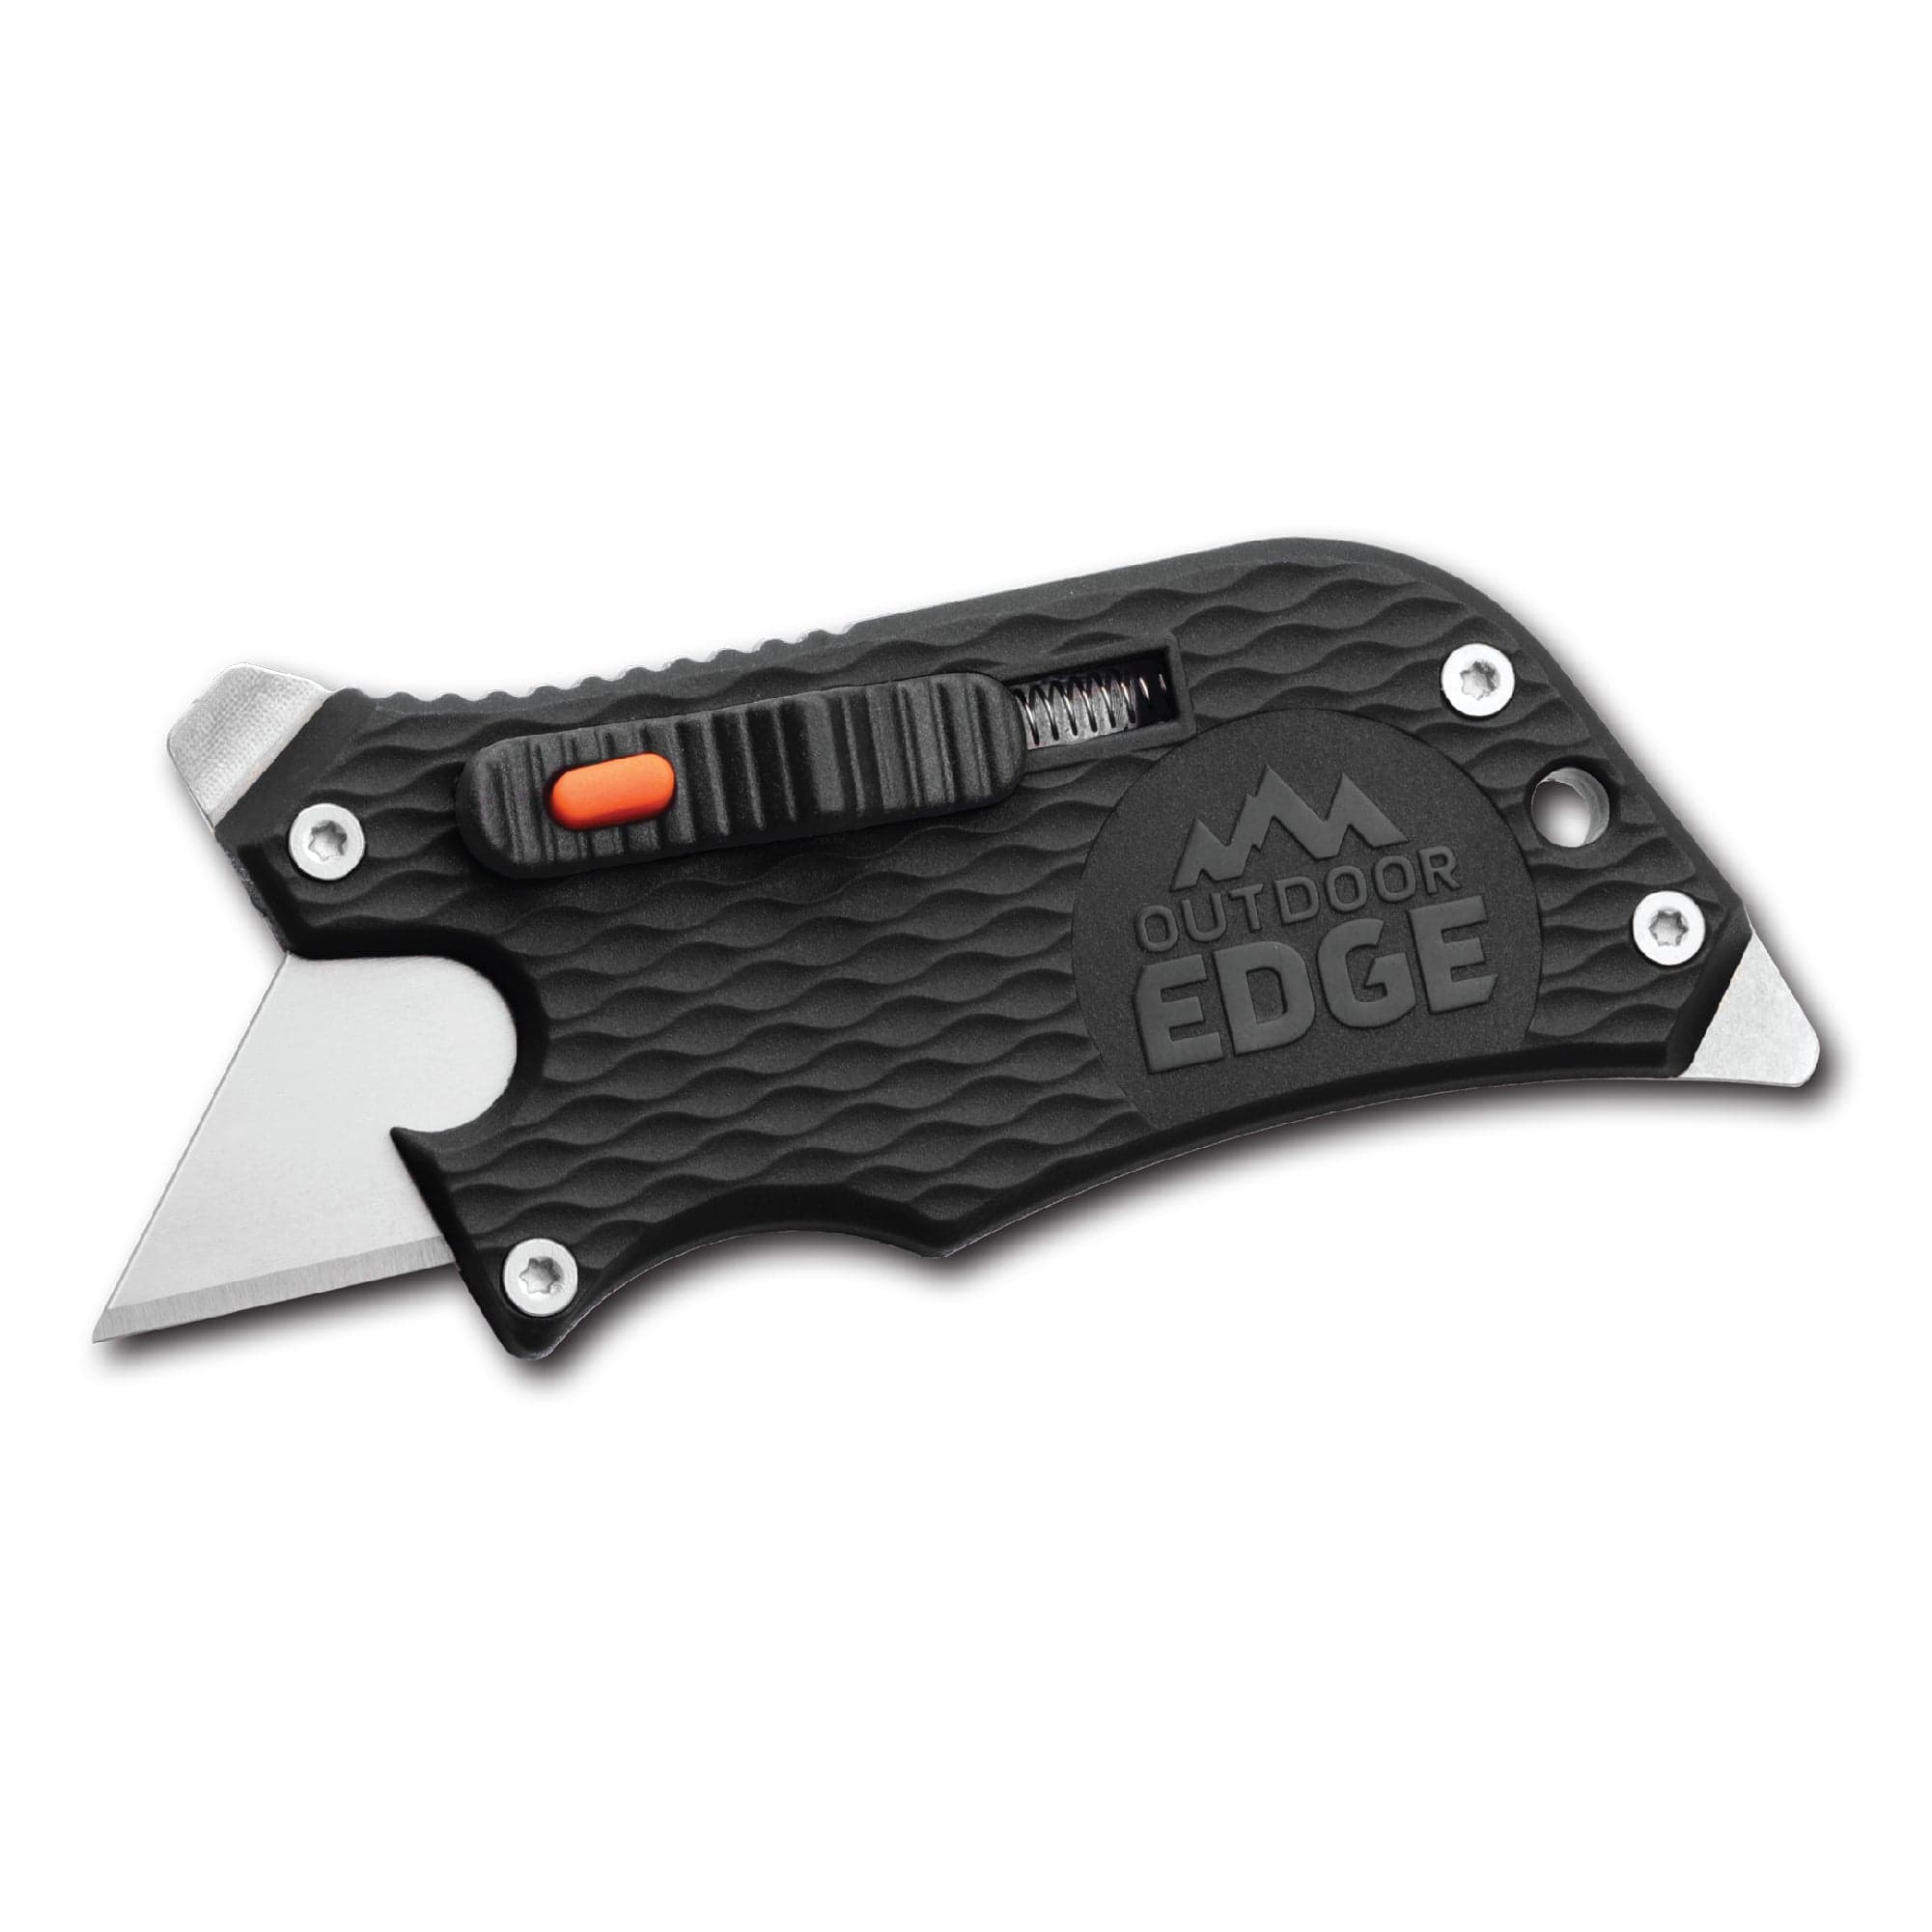 The Edge - Pocketknife Slide